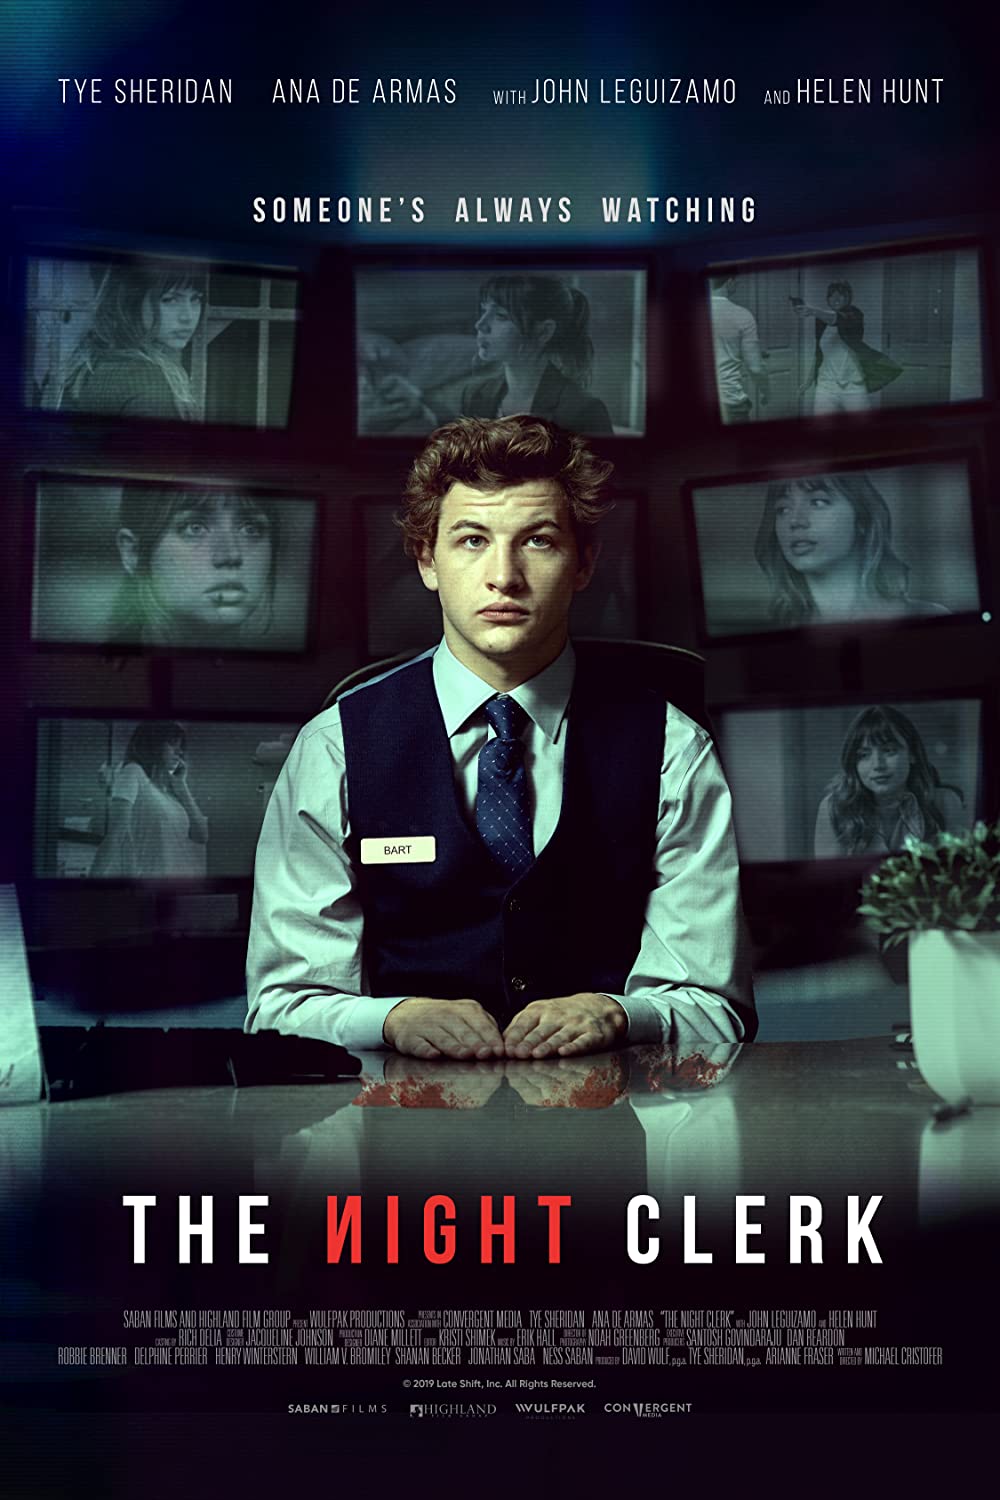 Filmbeschreibung zu The Night Clerk